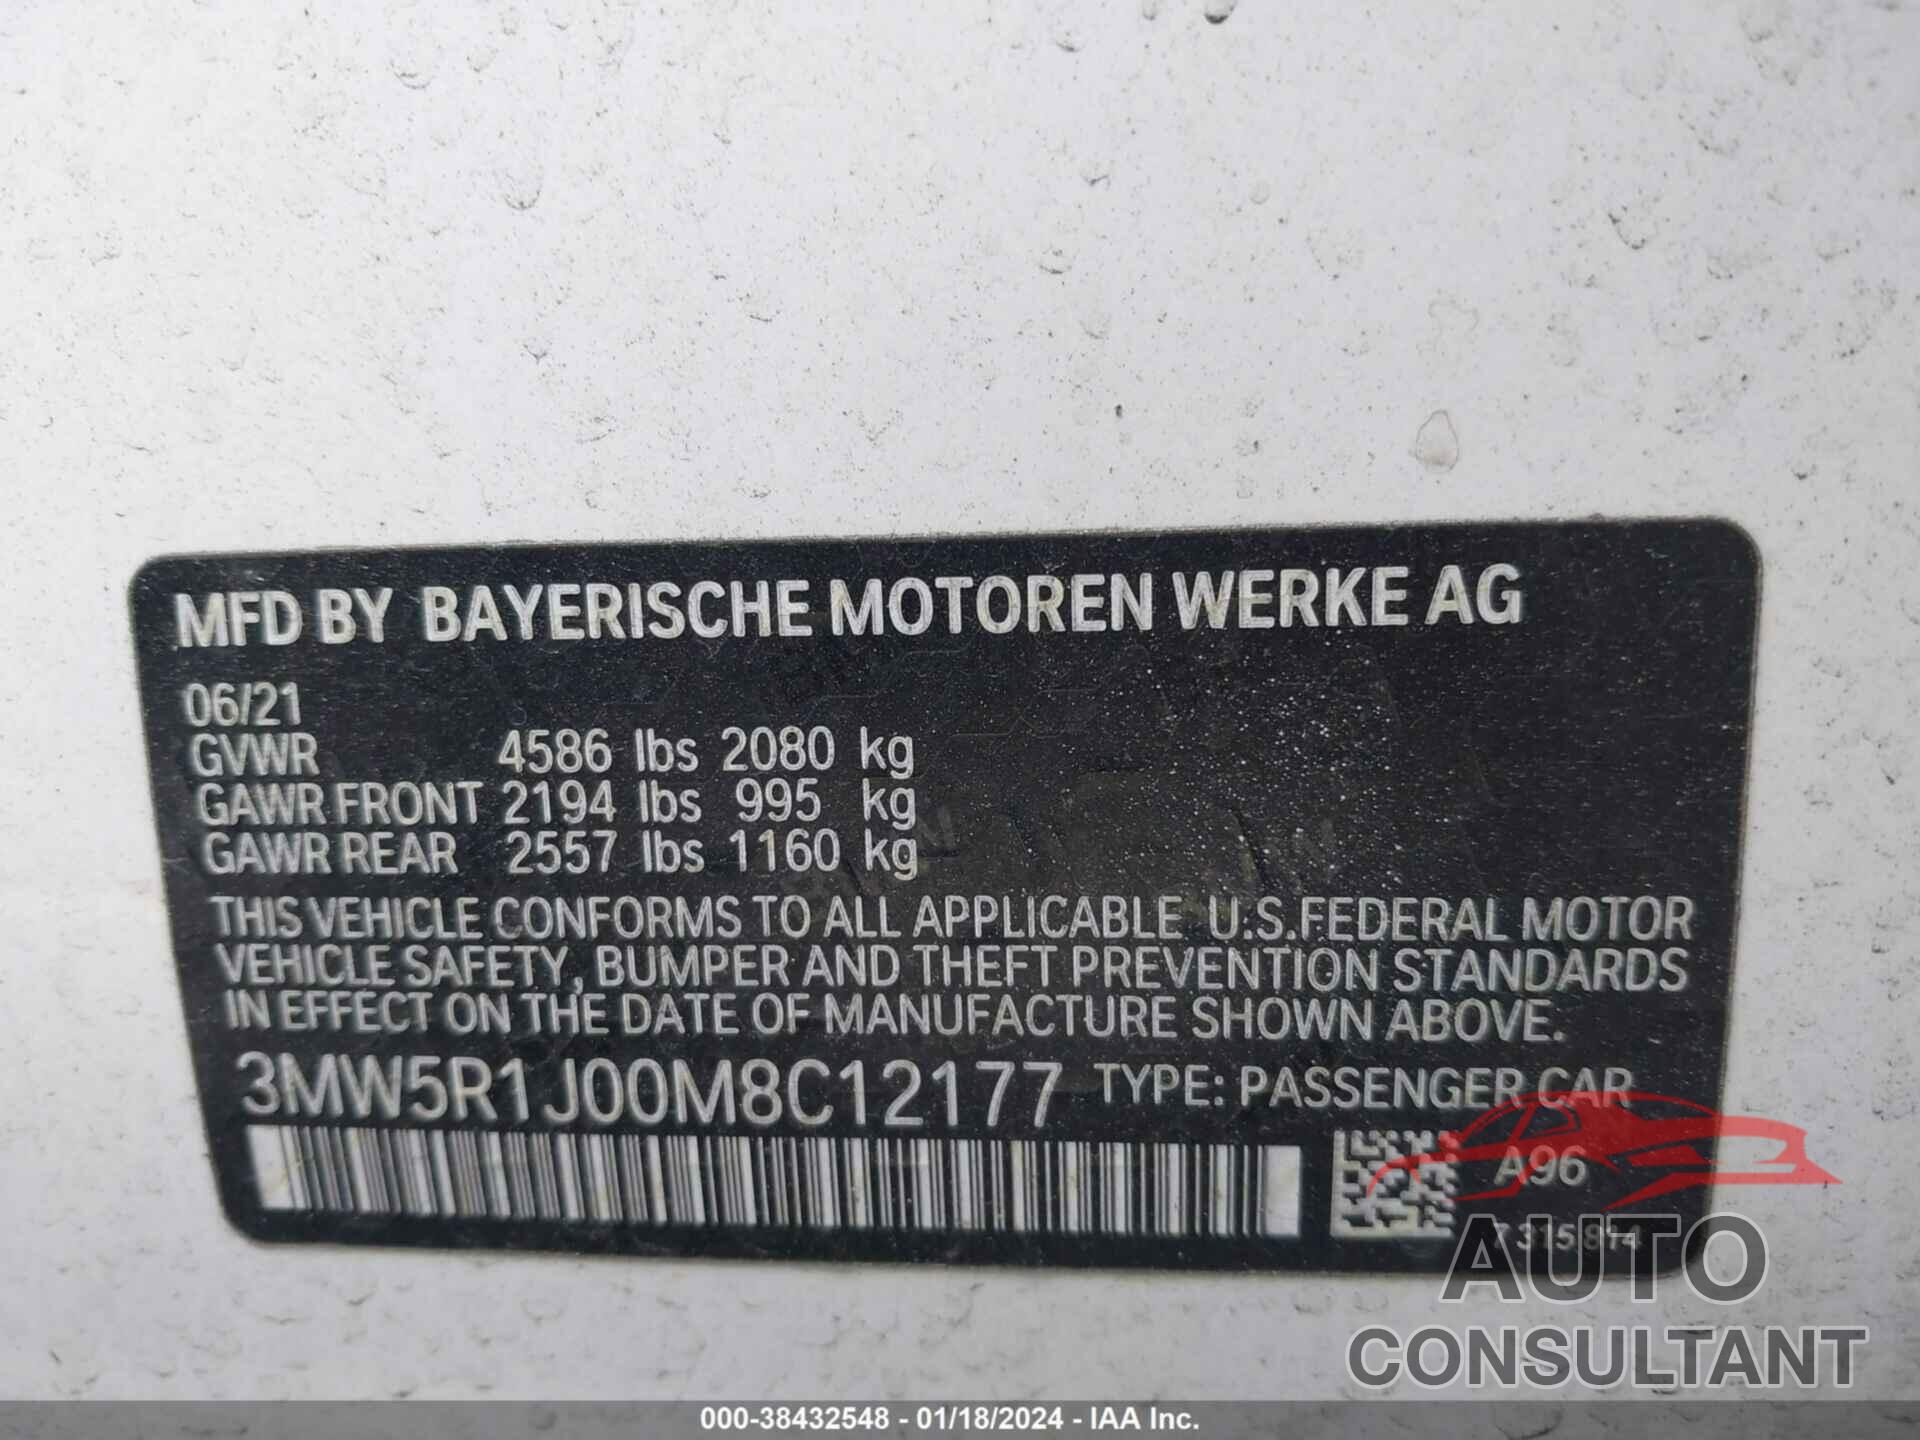 BMW 330I 2021 - 3MW5R1J00M8C12177